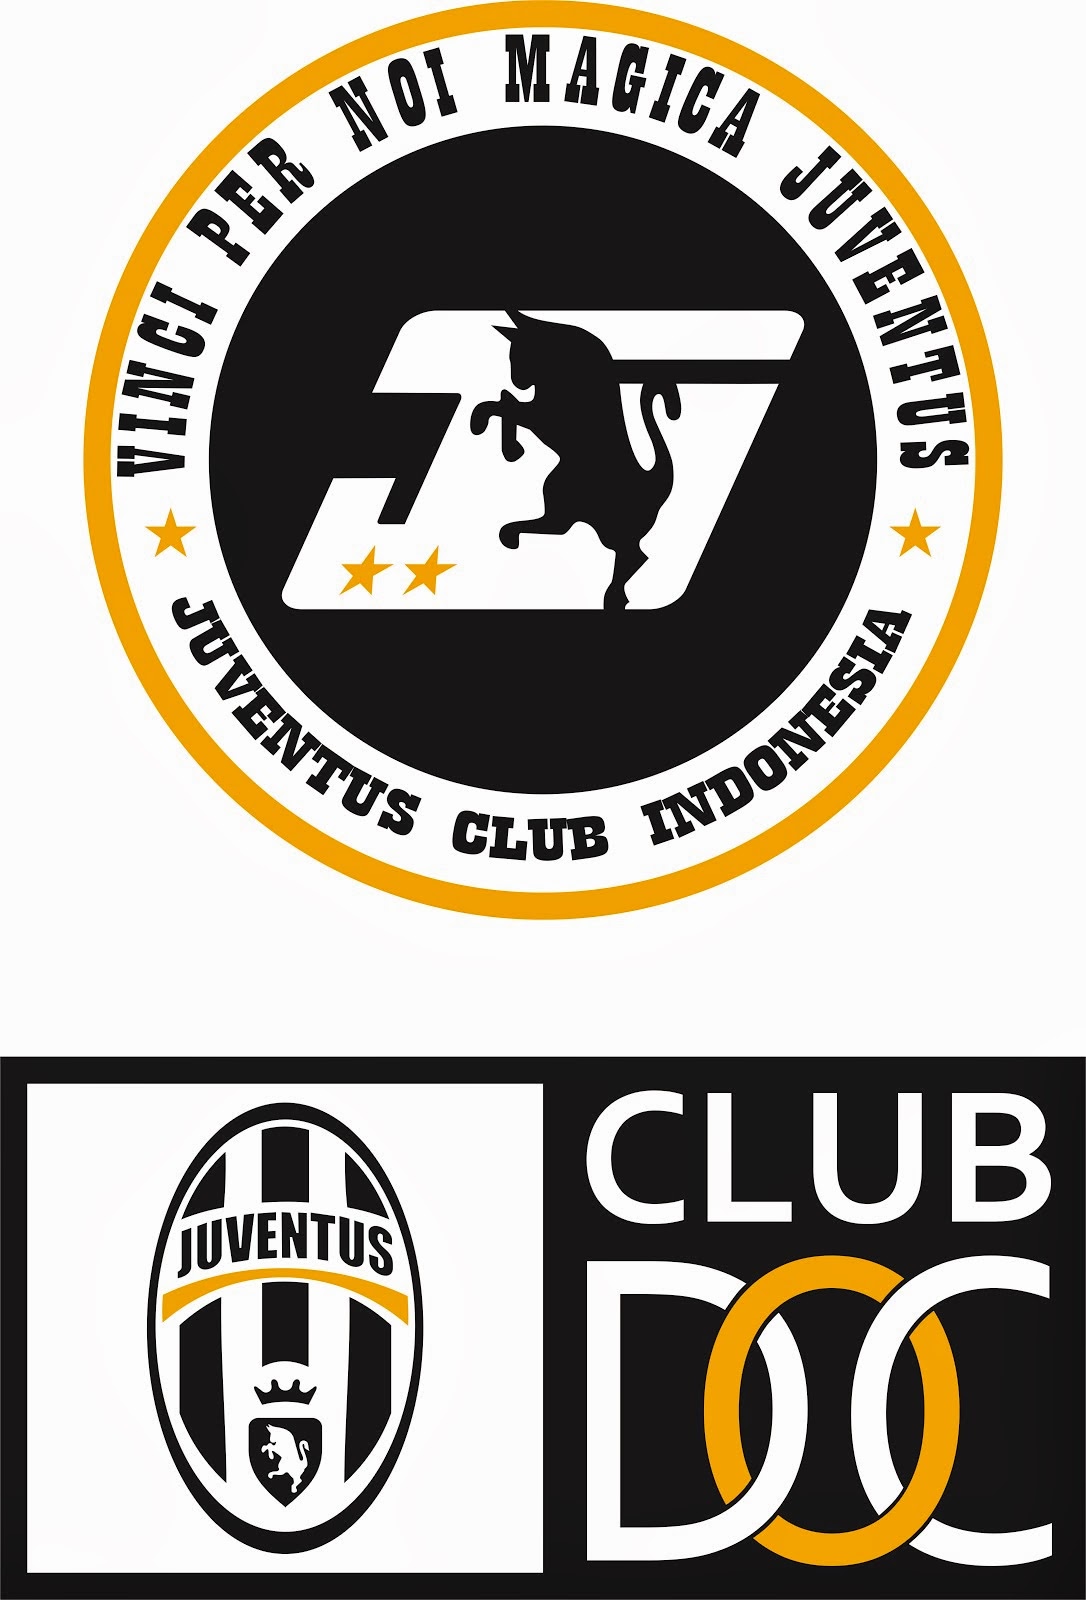 JUVENTUS CLUB INDONESIA